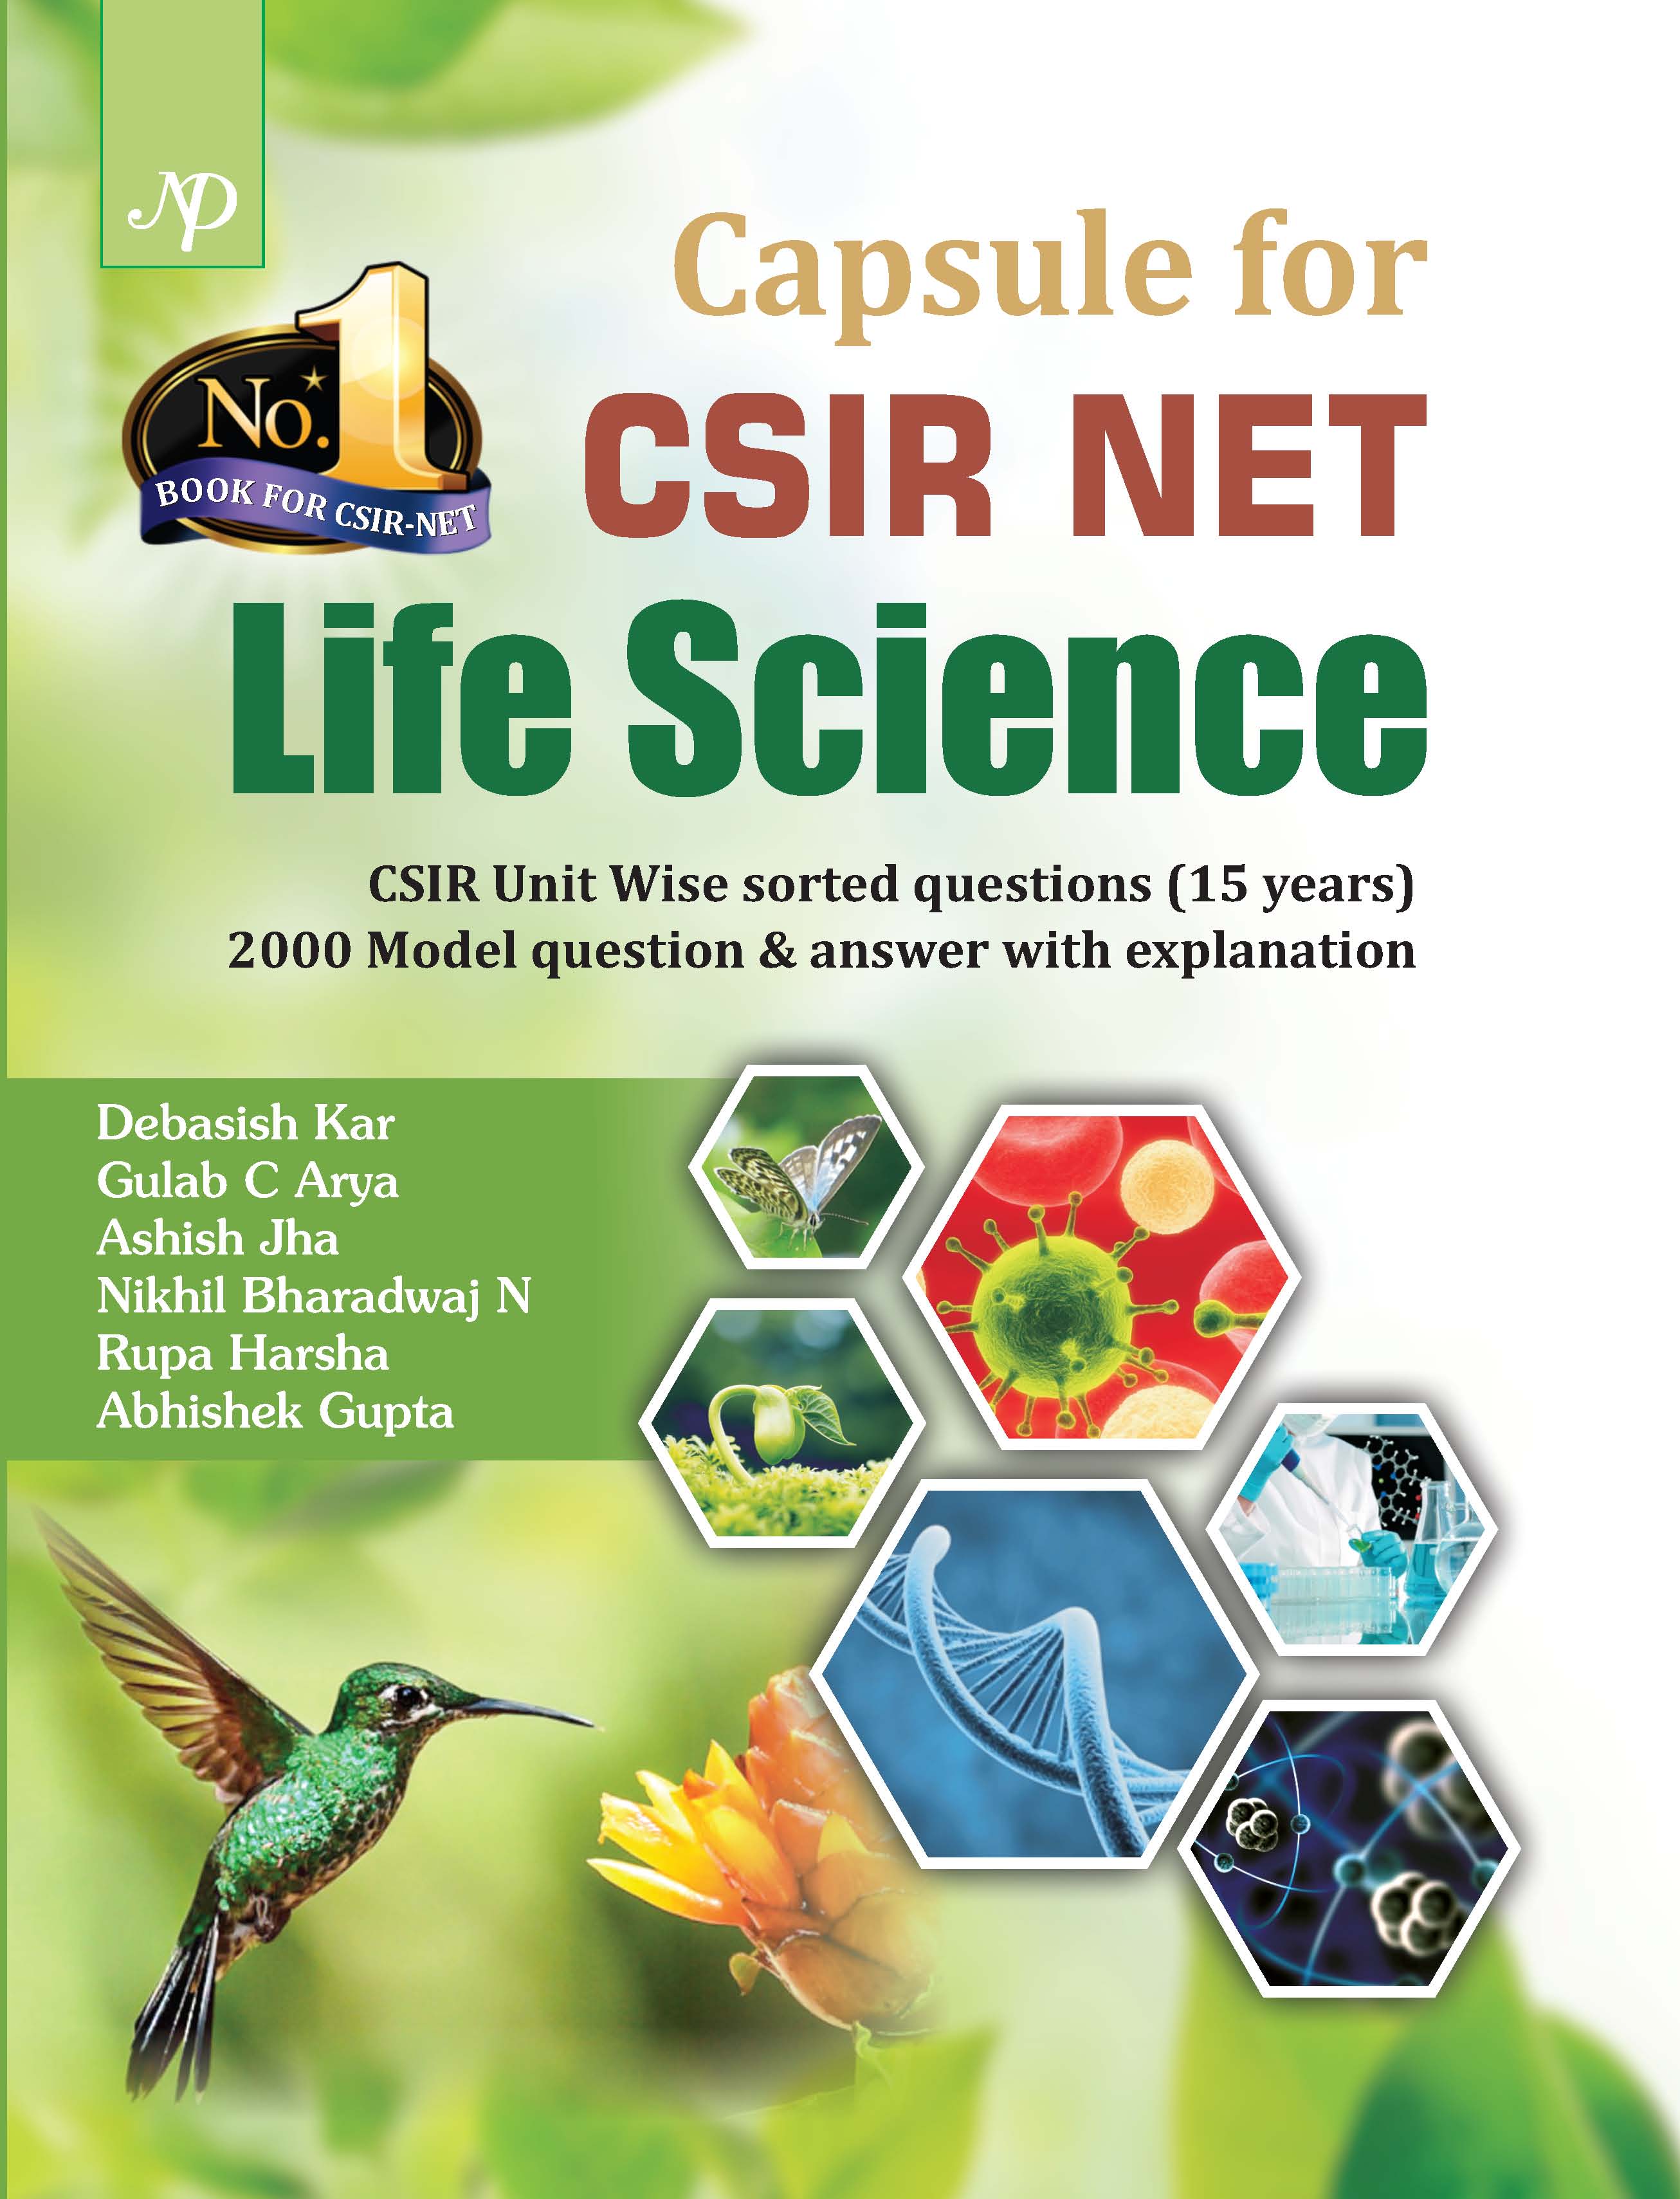 Capsule for CSIR NET Life Science.jpg